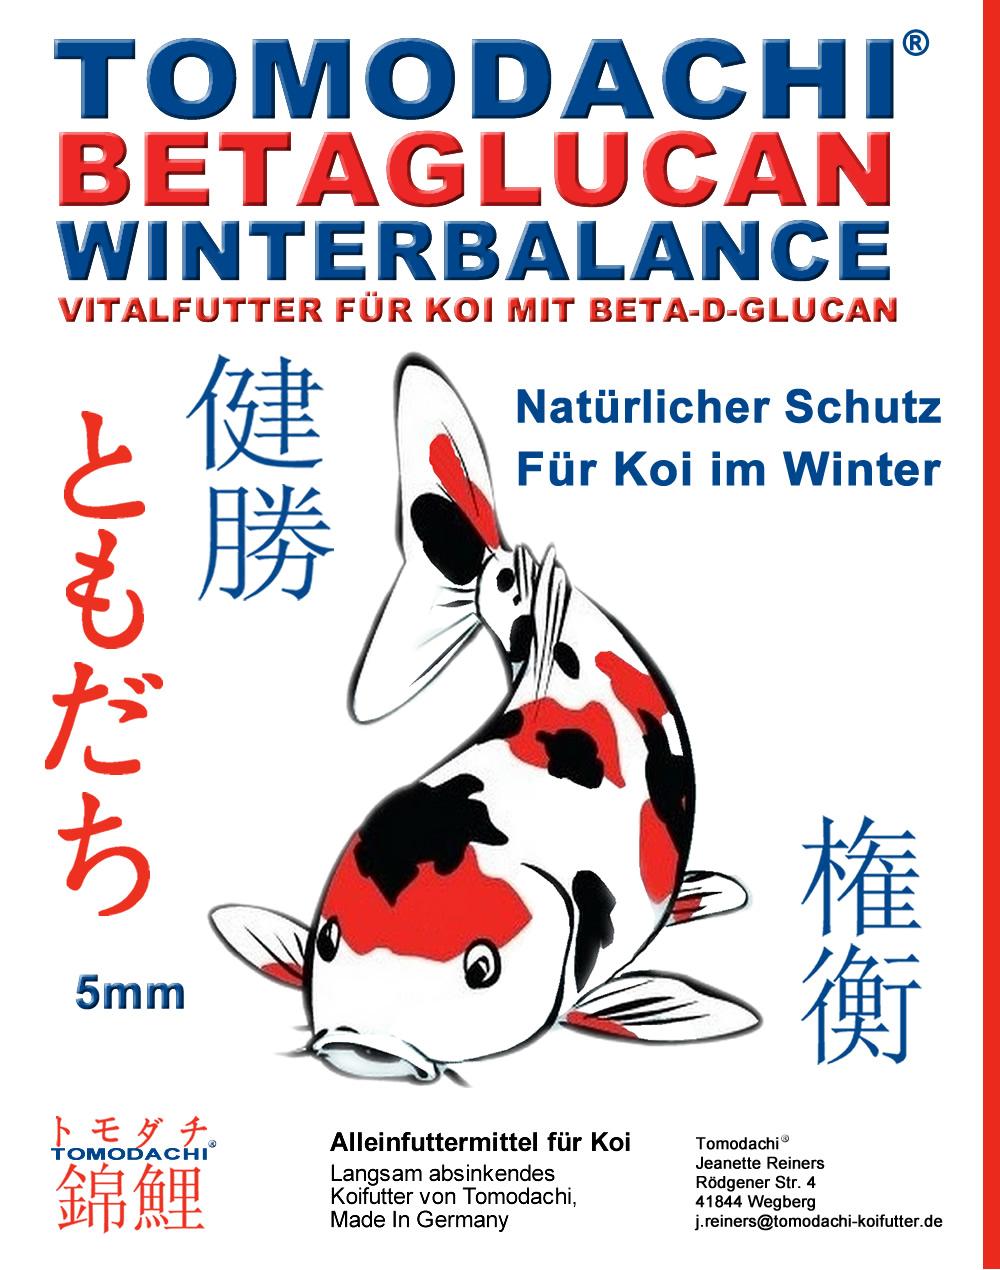 Tomodachi Winterbalance - Betaglucan Sinkfutter für Koi - Immunfitness für unsere Koi im Winter.